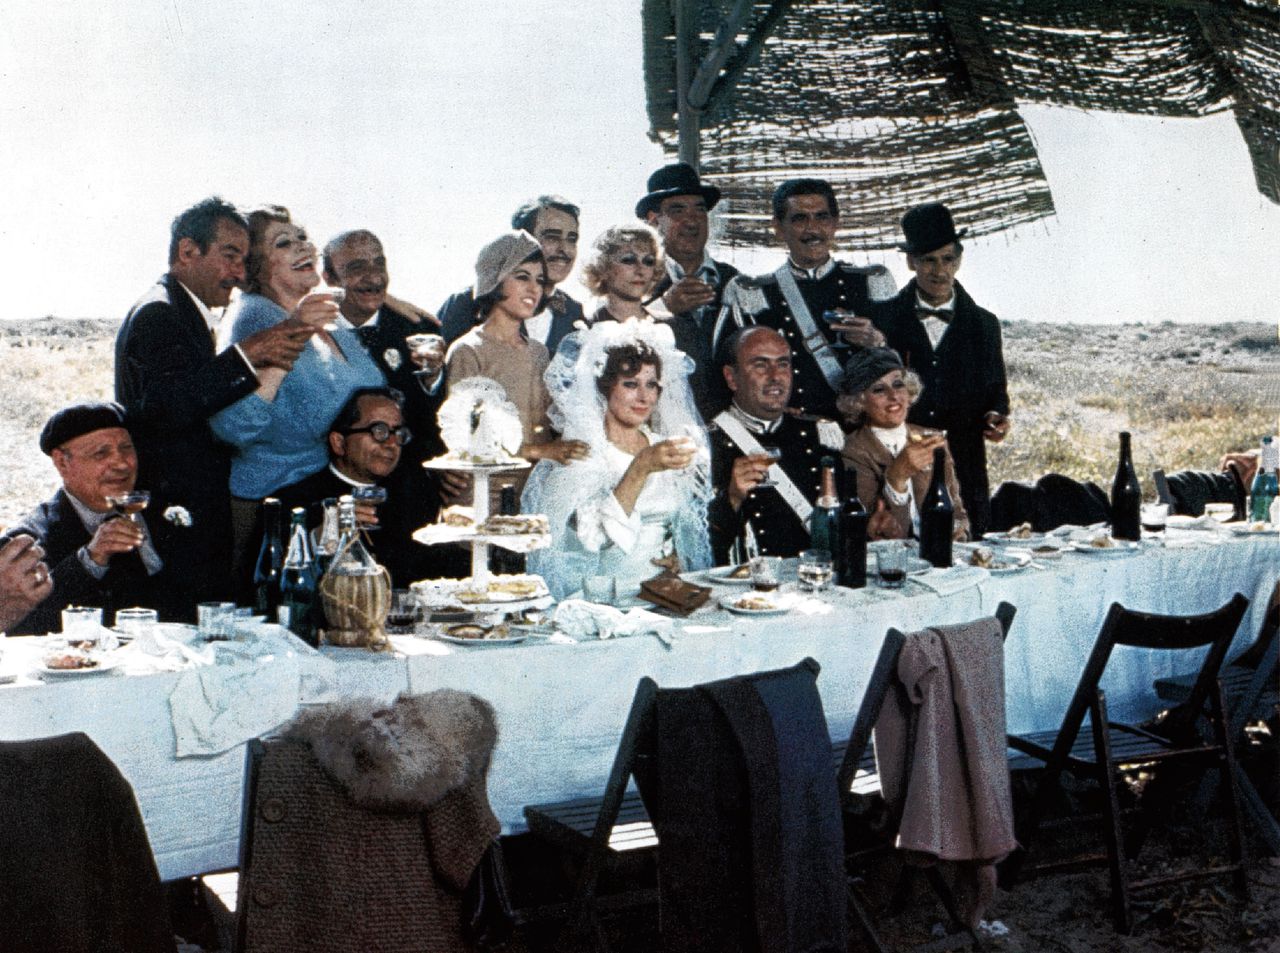 Federico Fellini zag fascisten als wat sneue mannen die waren blijven steken in hun adolescentie, wat hij gebruikte in zijn film ‘Amarcord’.